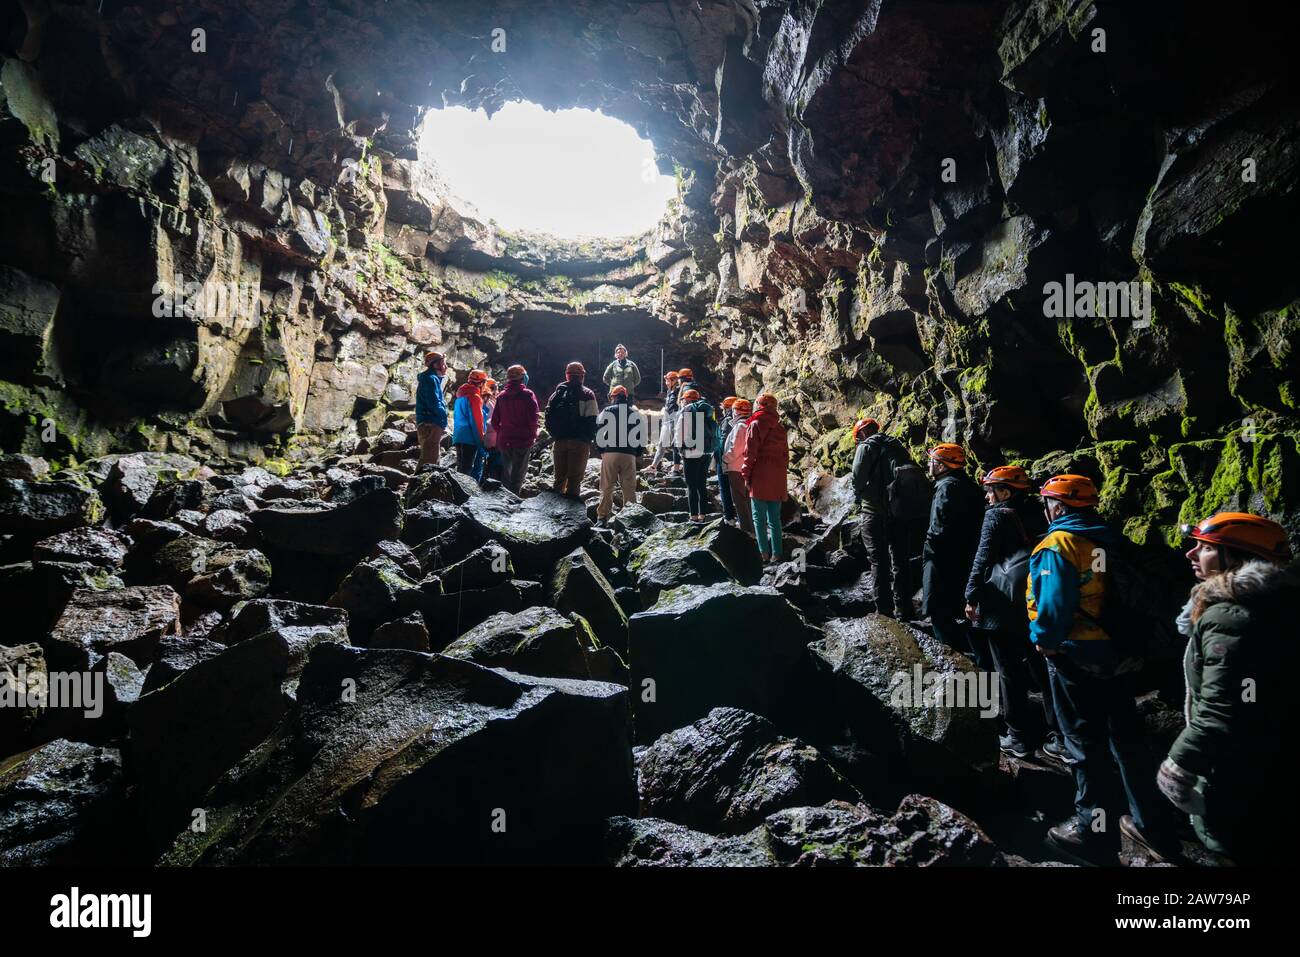 Porlakshafnarvegur, Islande - Juillet 3, 2018 : Groupe de personnes et les touristes d'explorer la grotte du tunnel de lave de Raufarholshellir en Islande. La grotte était naturellement Banque D'Images